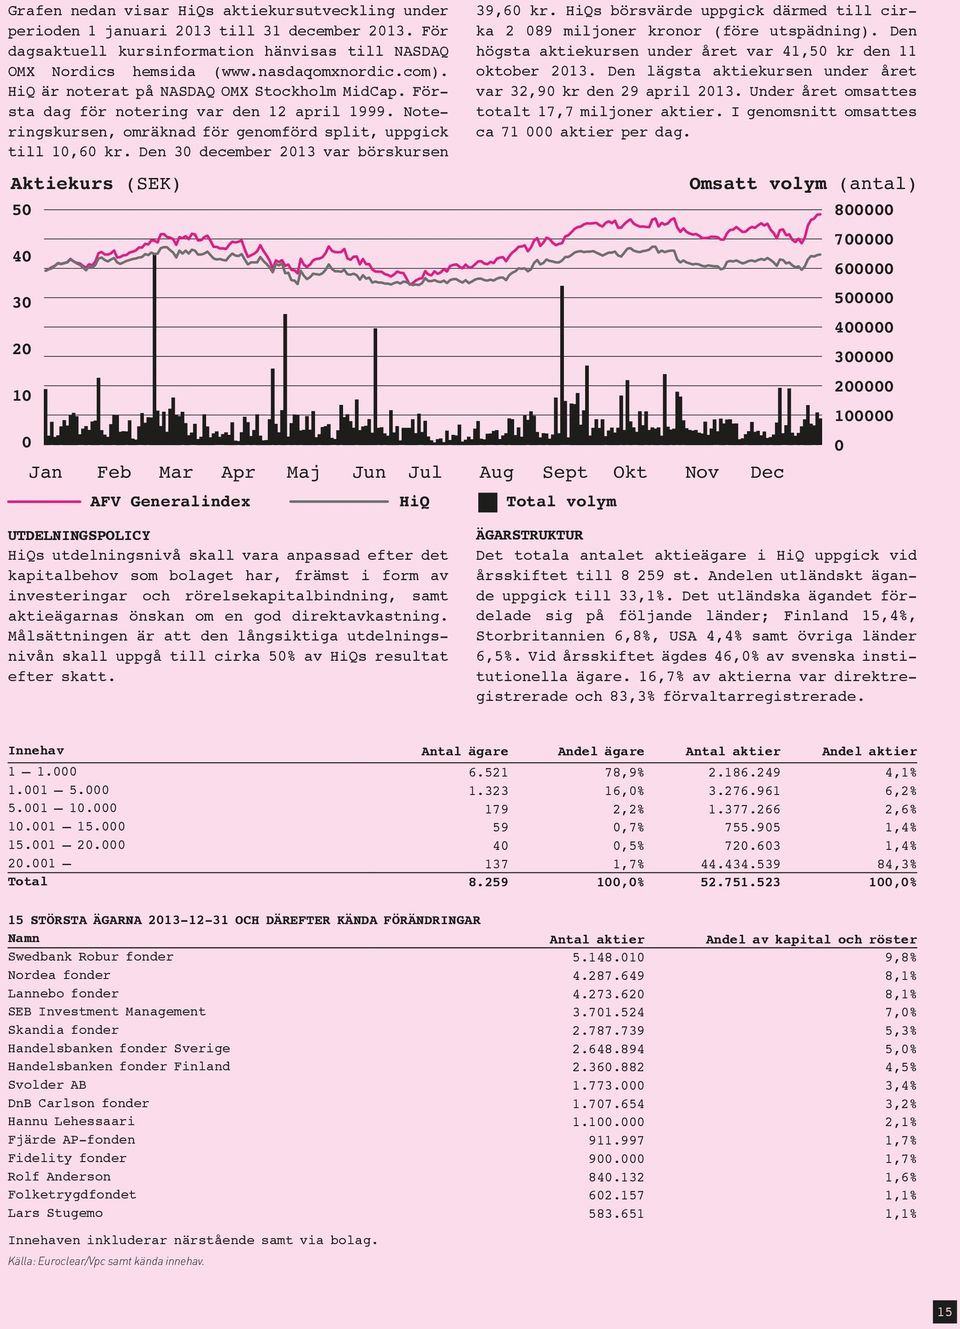 Den 30 december 2013 var börskursen 39,60 kr. HiQs börsvärde uppgick därmed till cirka 2 089 miljoner kronor (före utspädning). Den högsta aktiekursen under året var 41,50 kr den 11 oktober 2013.